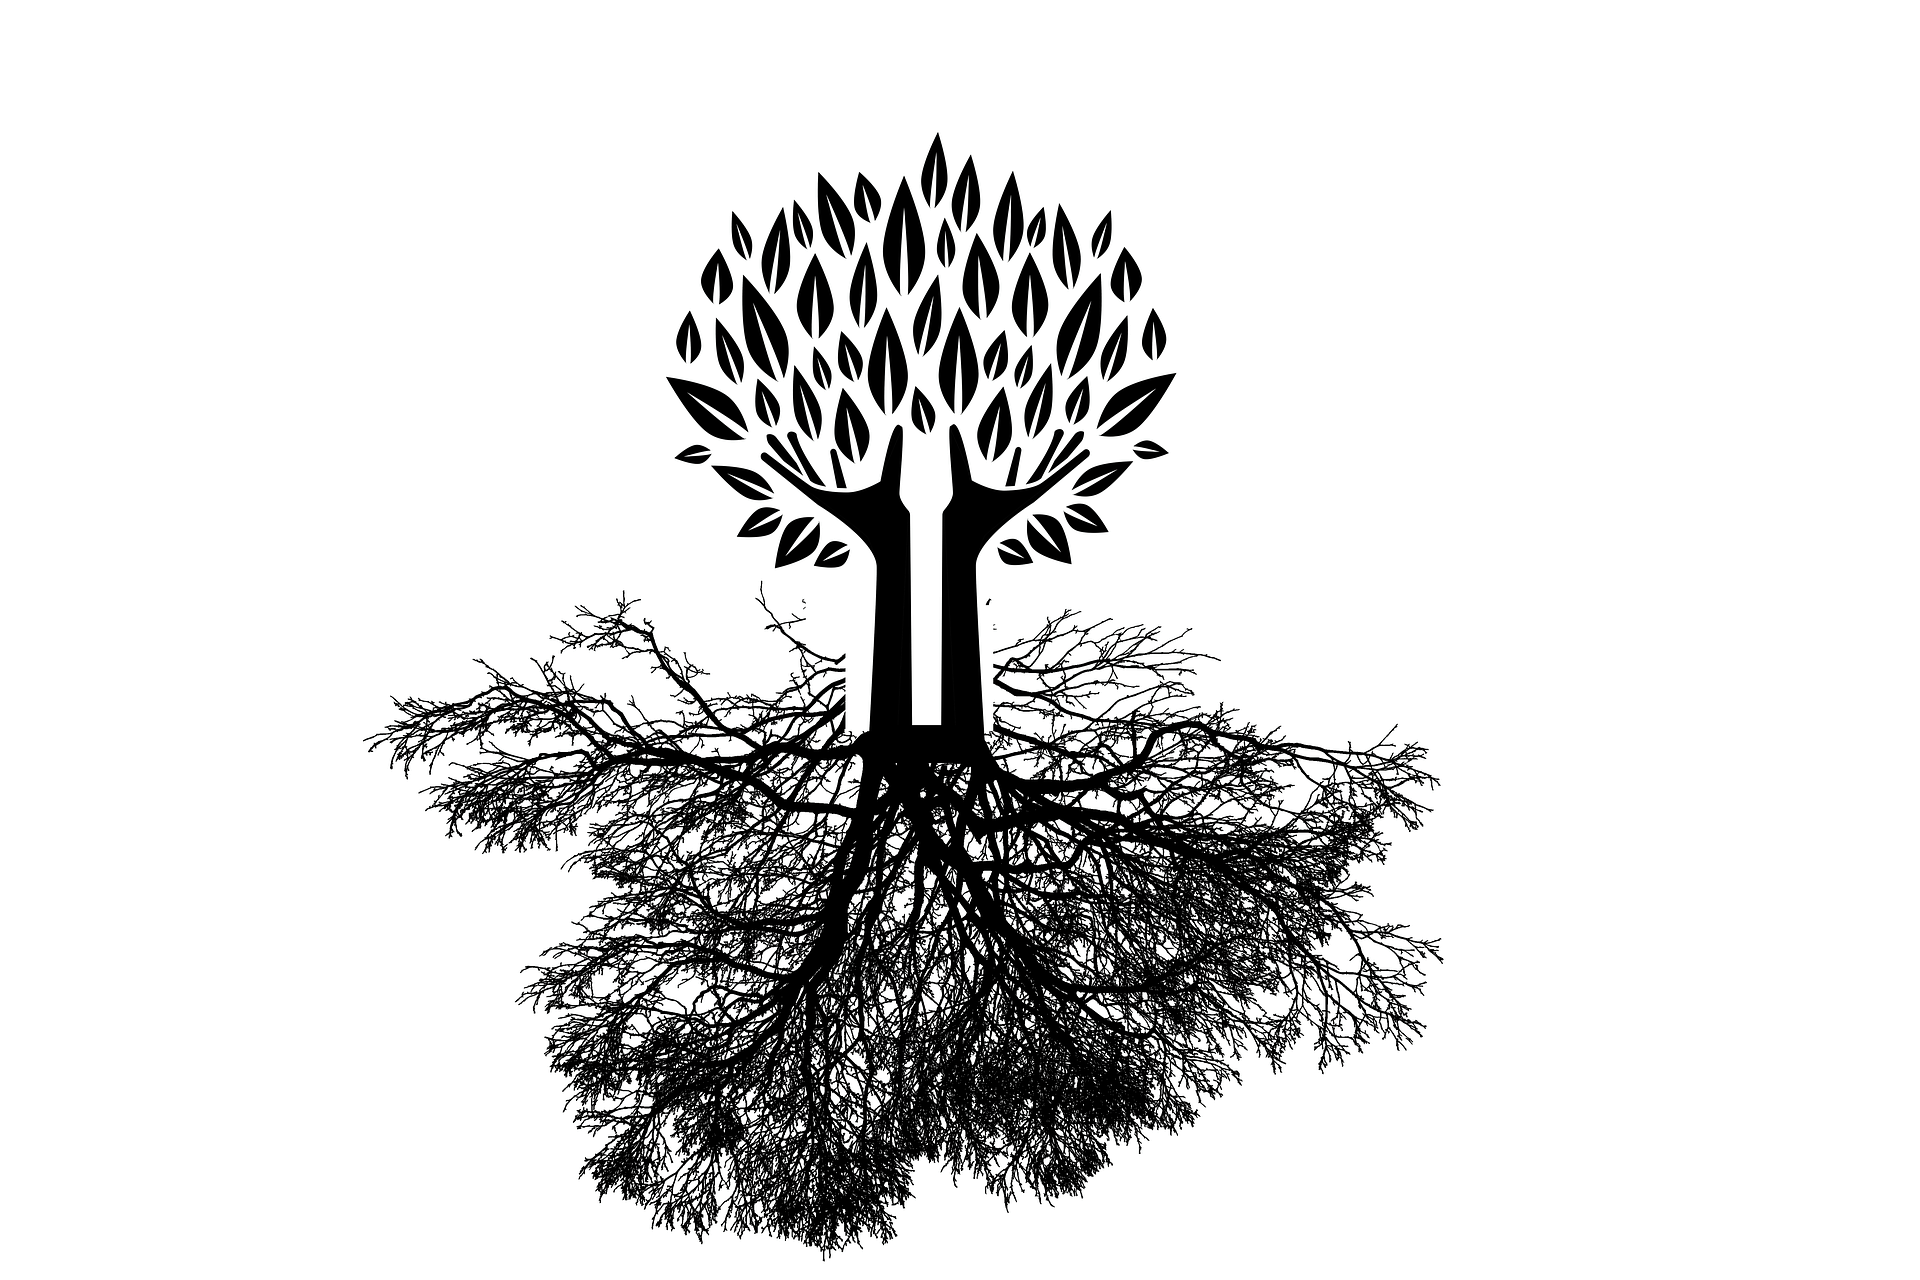 Schwarz-weiß Zeichnung eines Baumes, dessen Blüten auf Händen getragen werden.